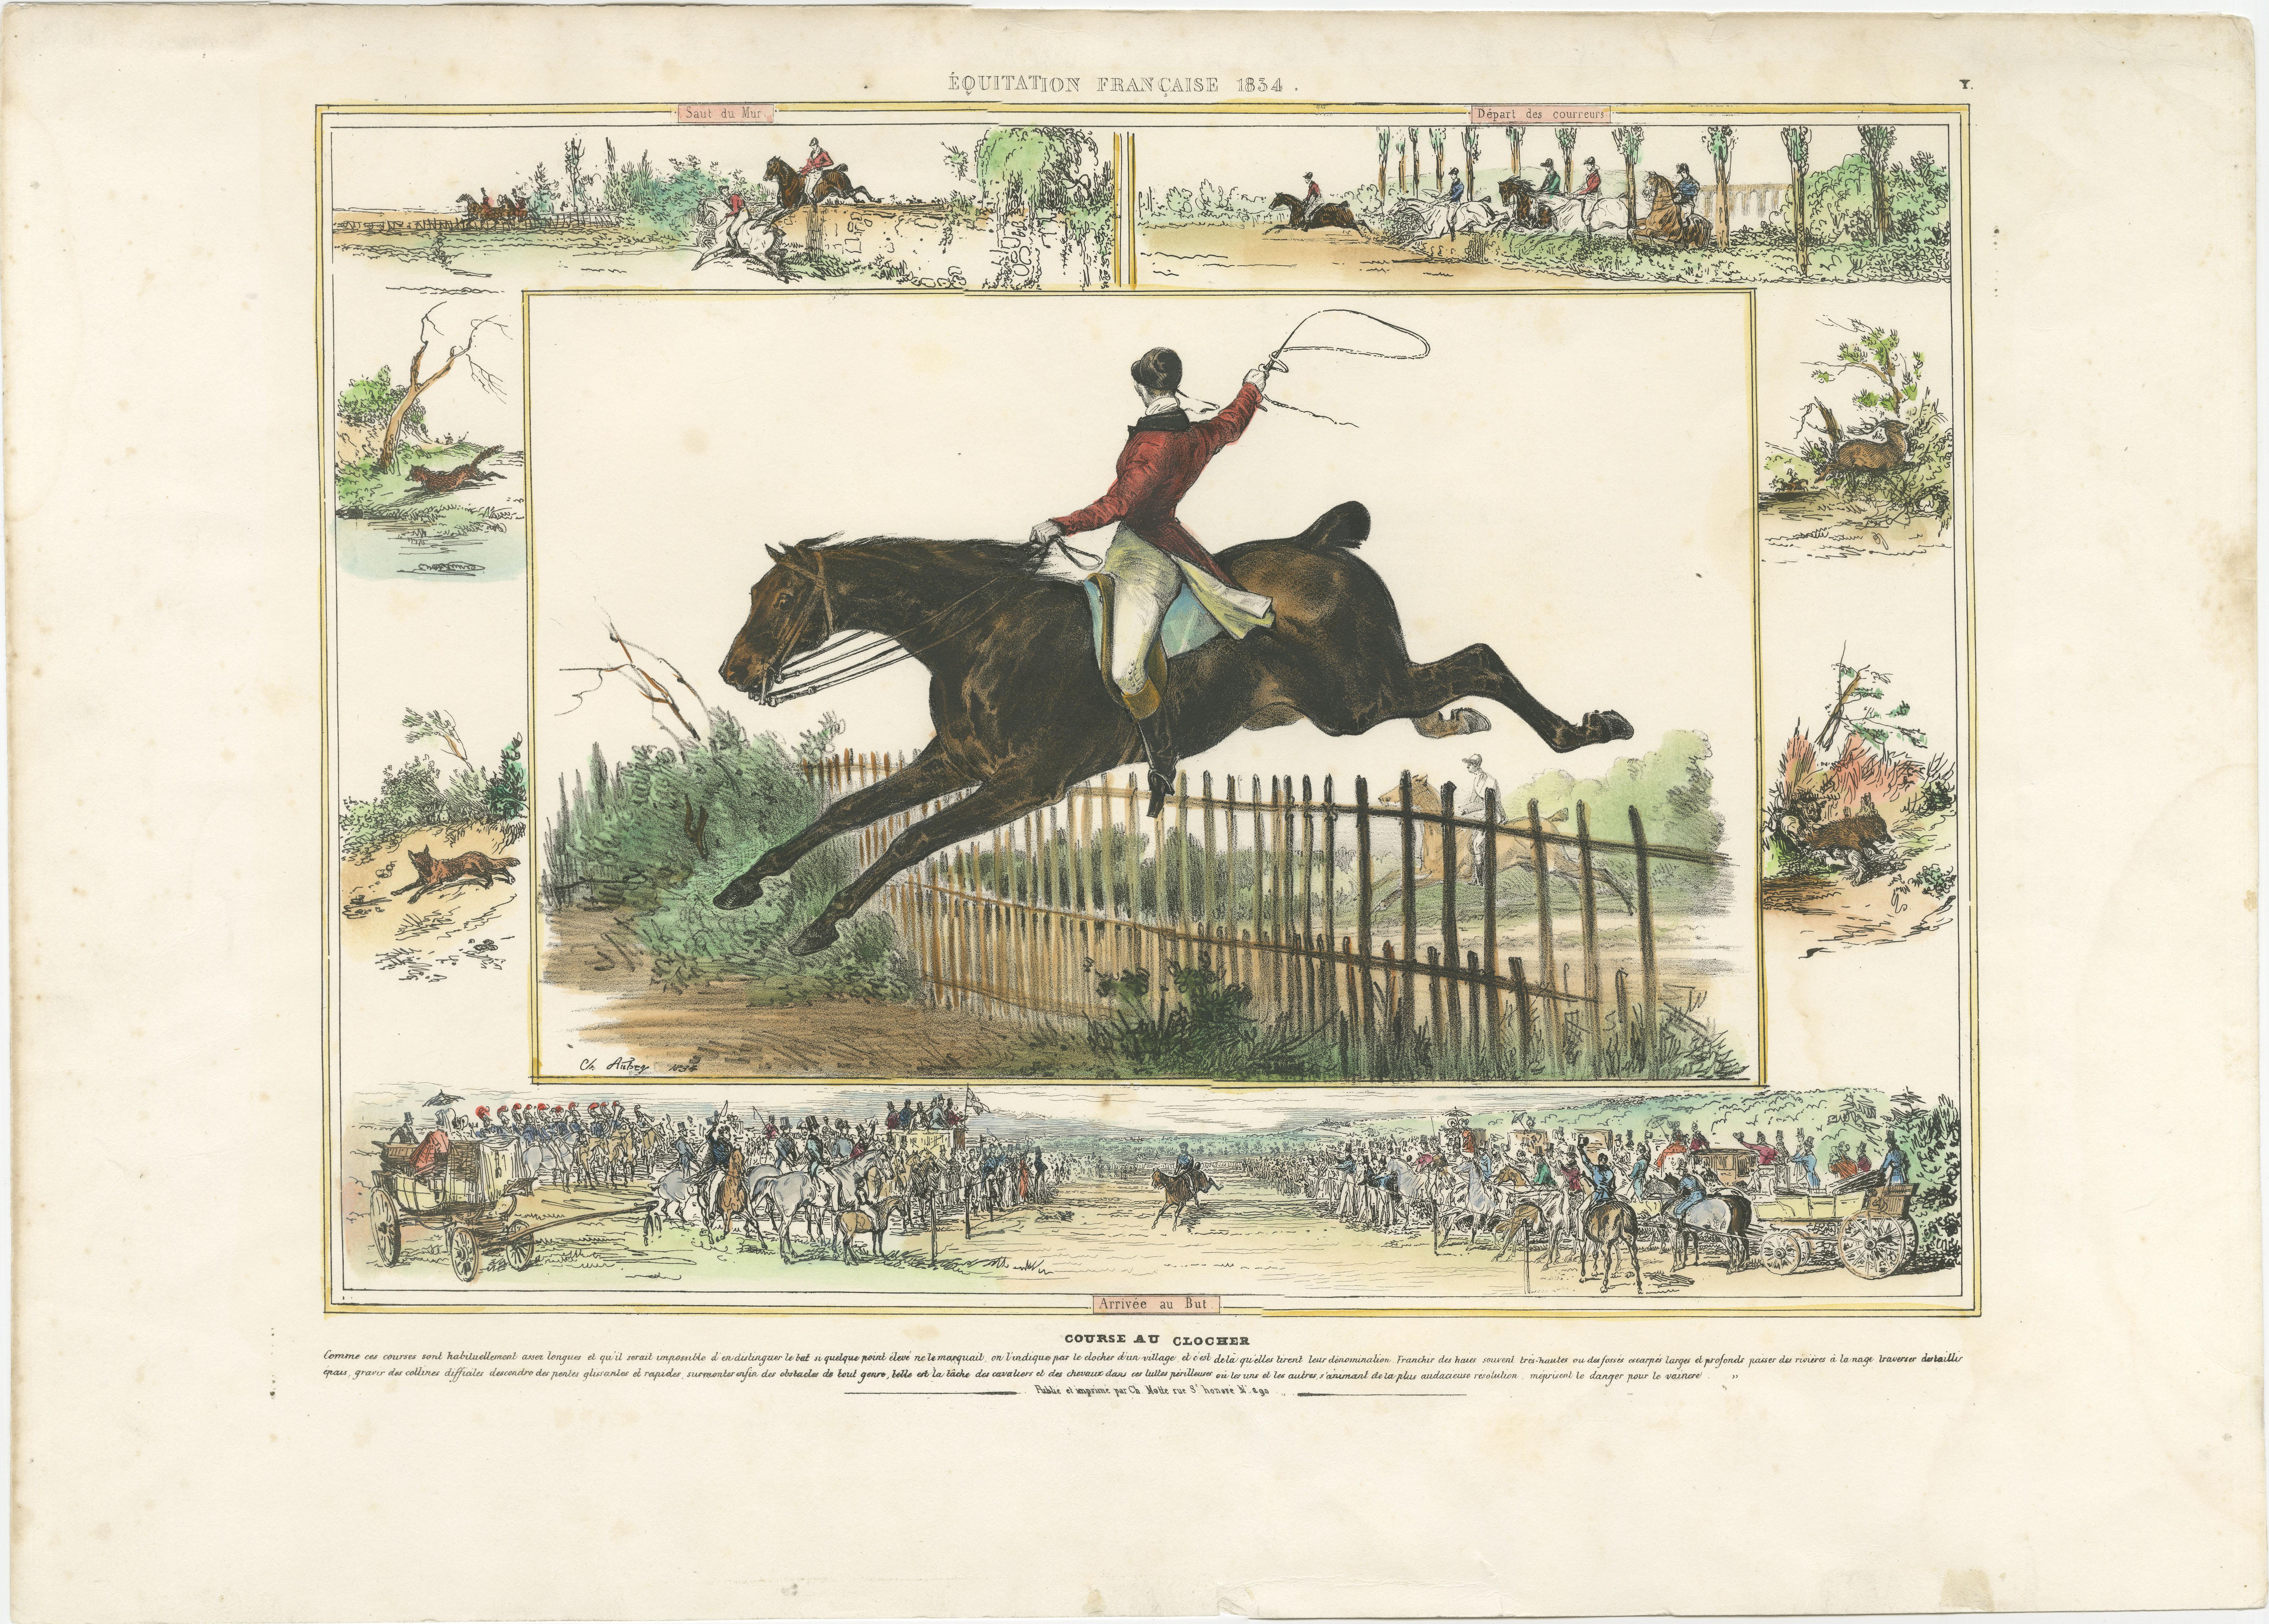 Antique print titled 'Équitation Francaise 1834 (.) Course au Clocher (.)'. Original lithograph of a horse race. Published by Ch. Motte, circa 1830.